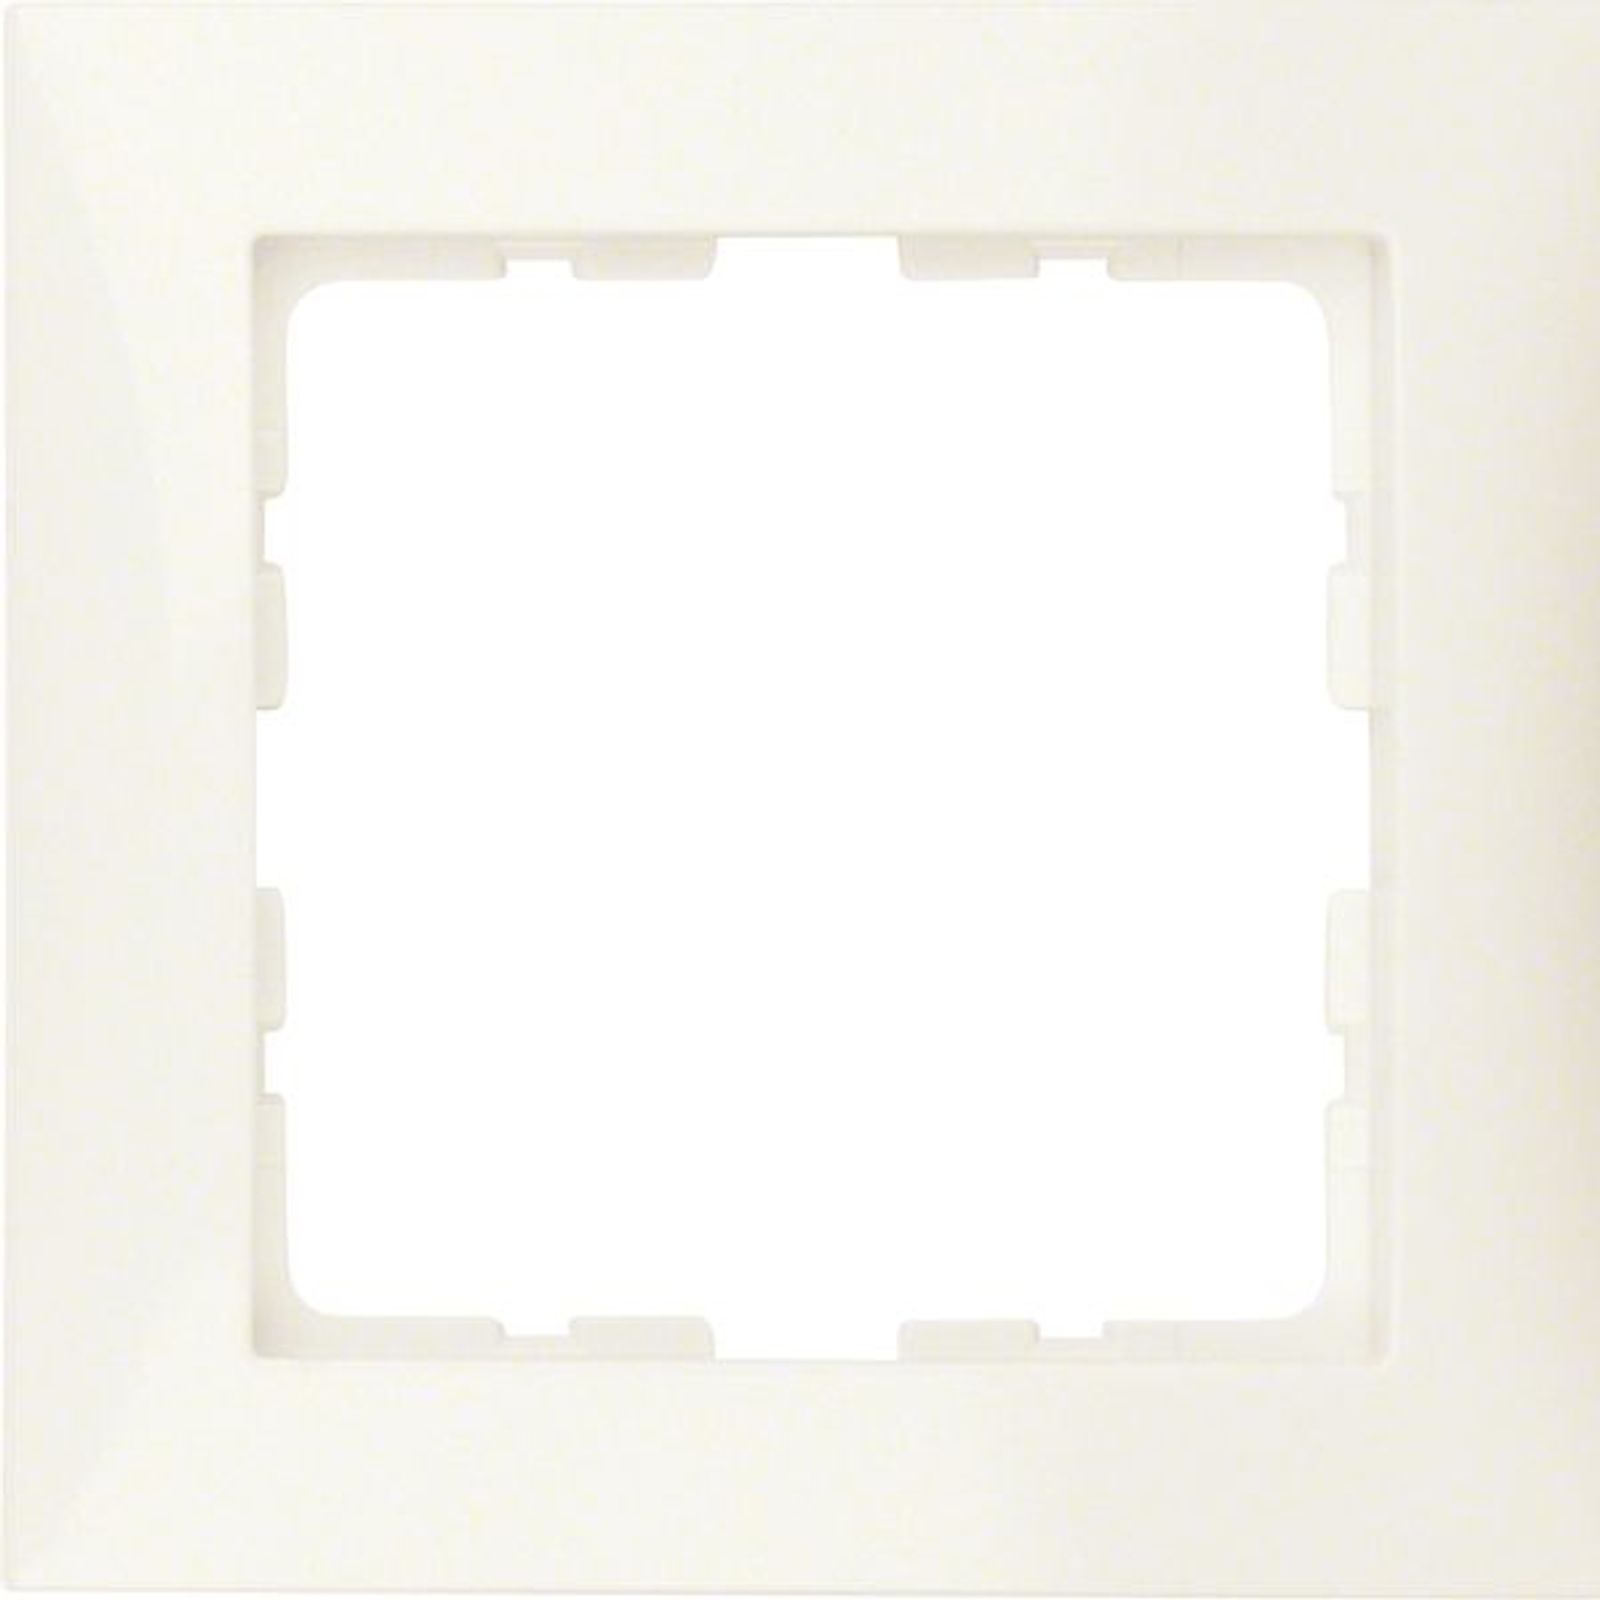 Berker 10118982 Rahmen 1fach S.1 weiß, glänzend